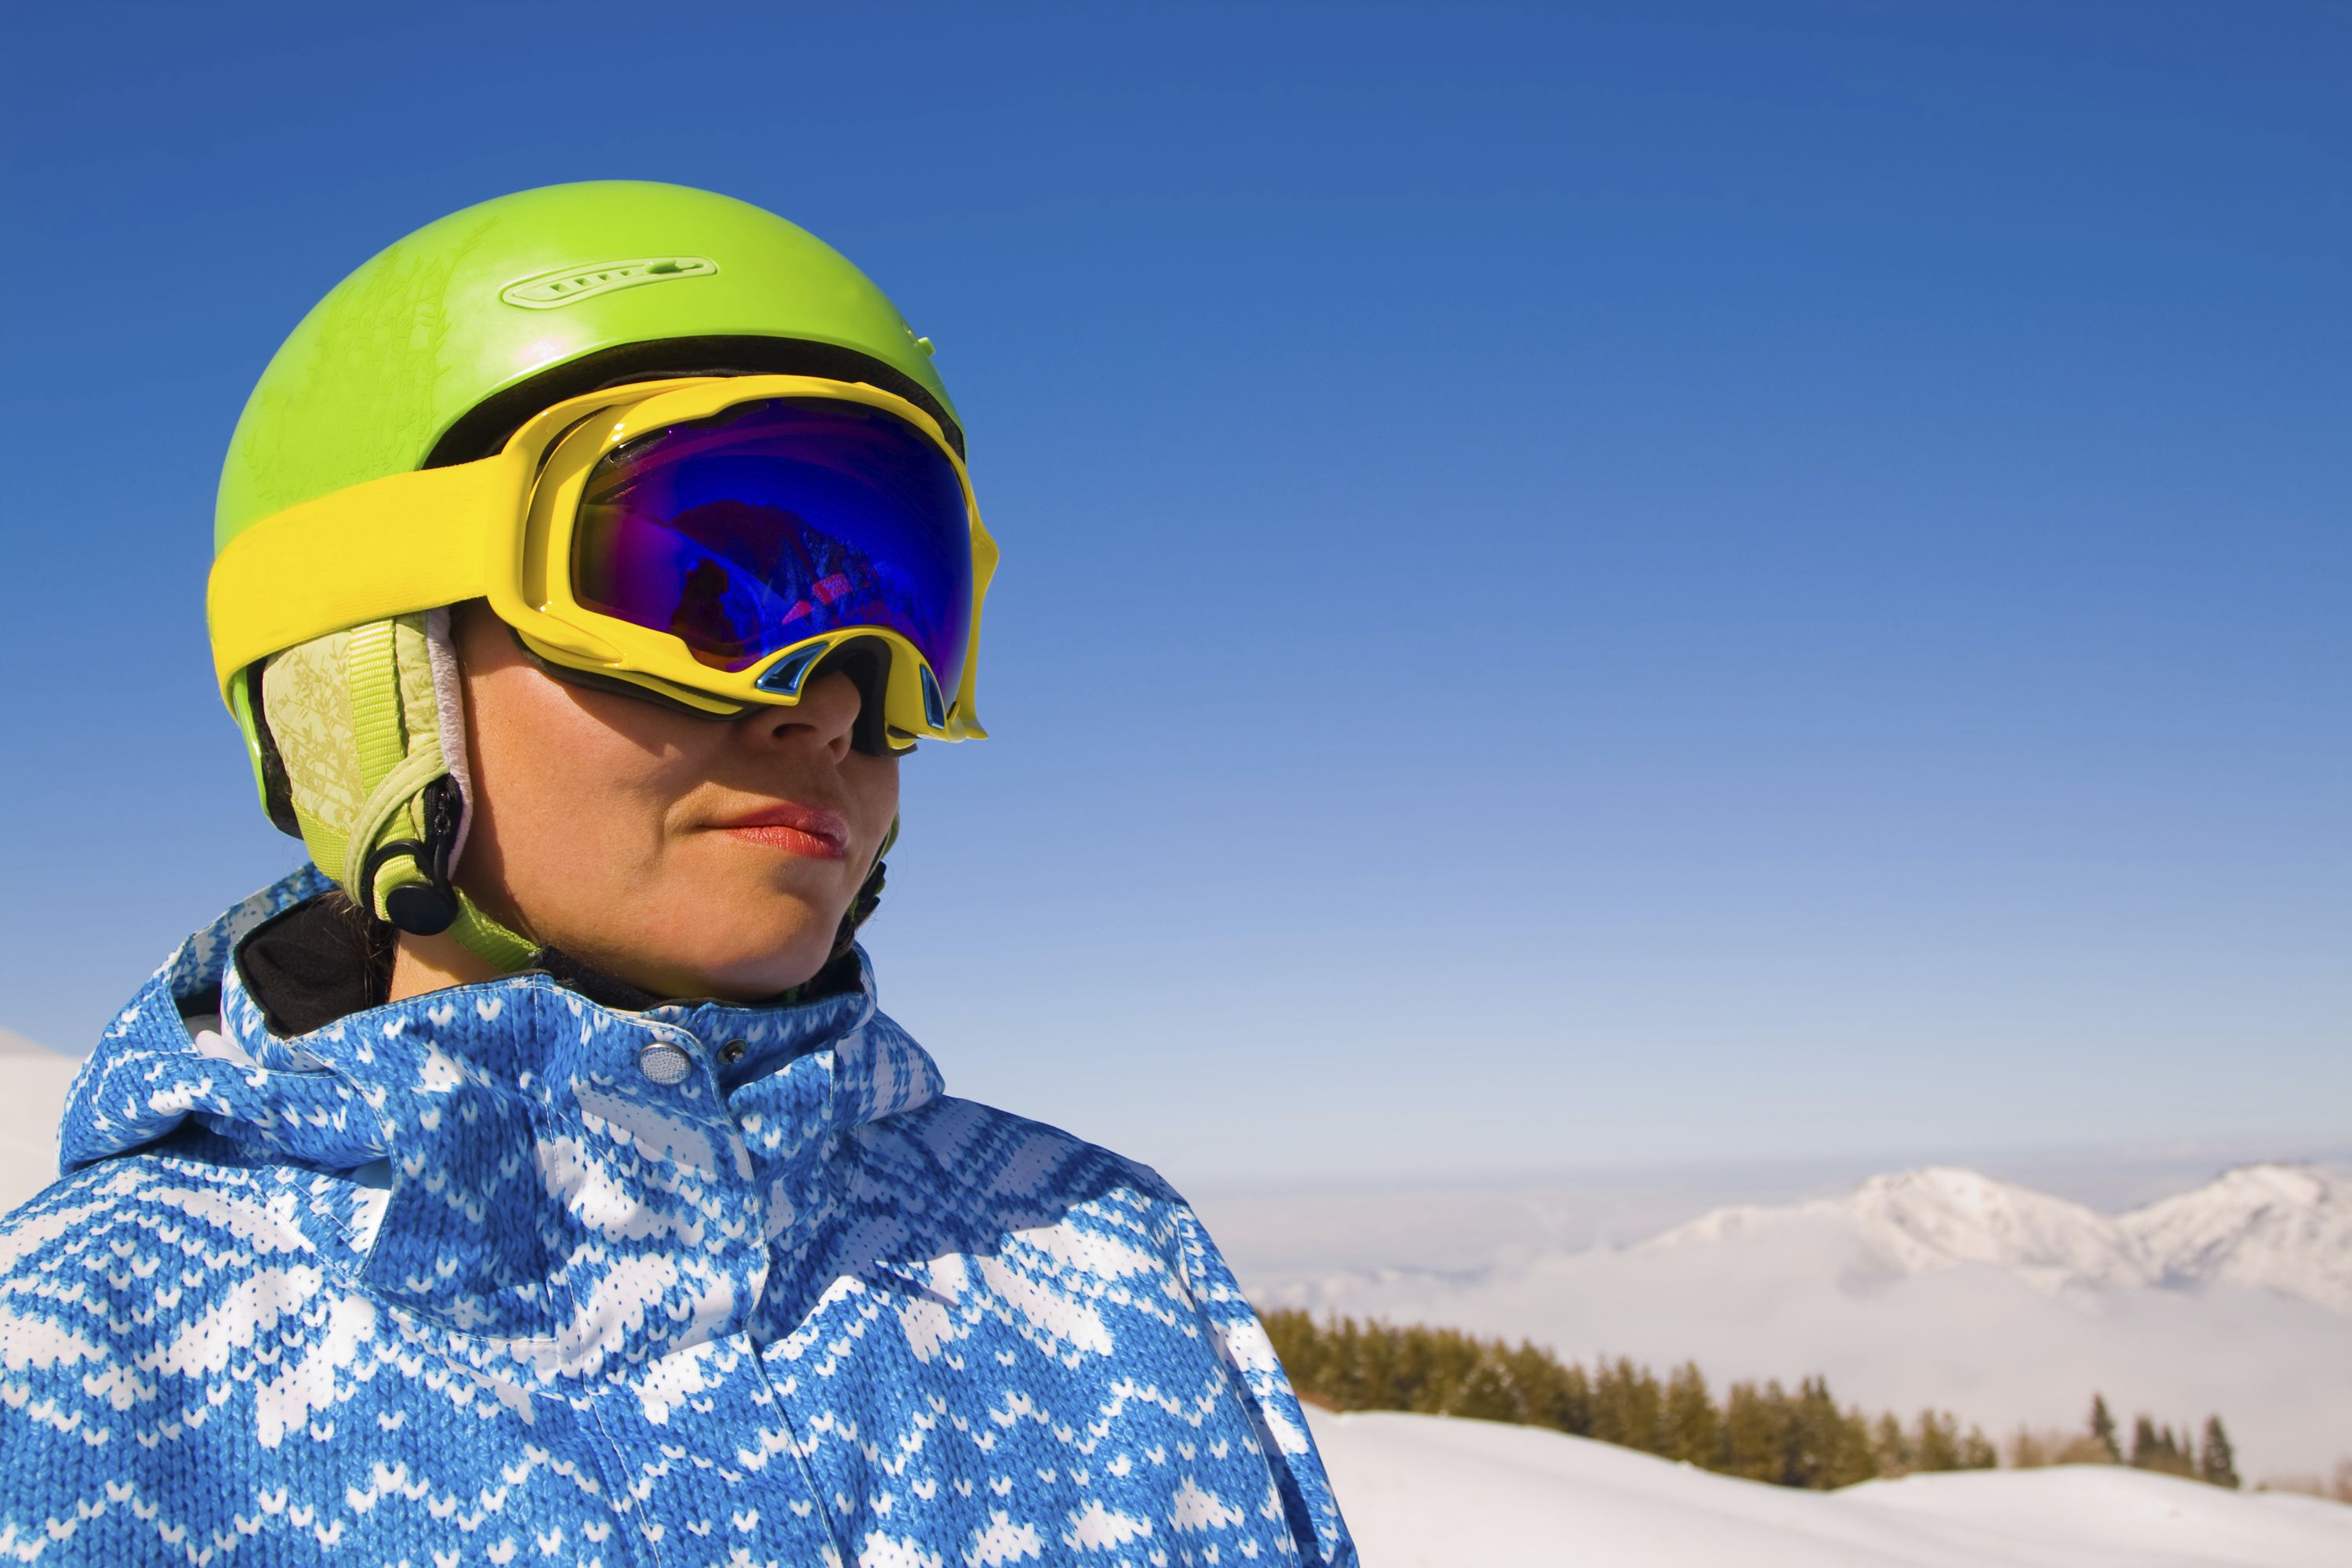 skiing hairstyles helmet